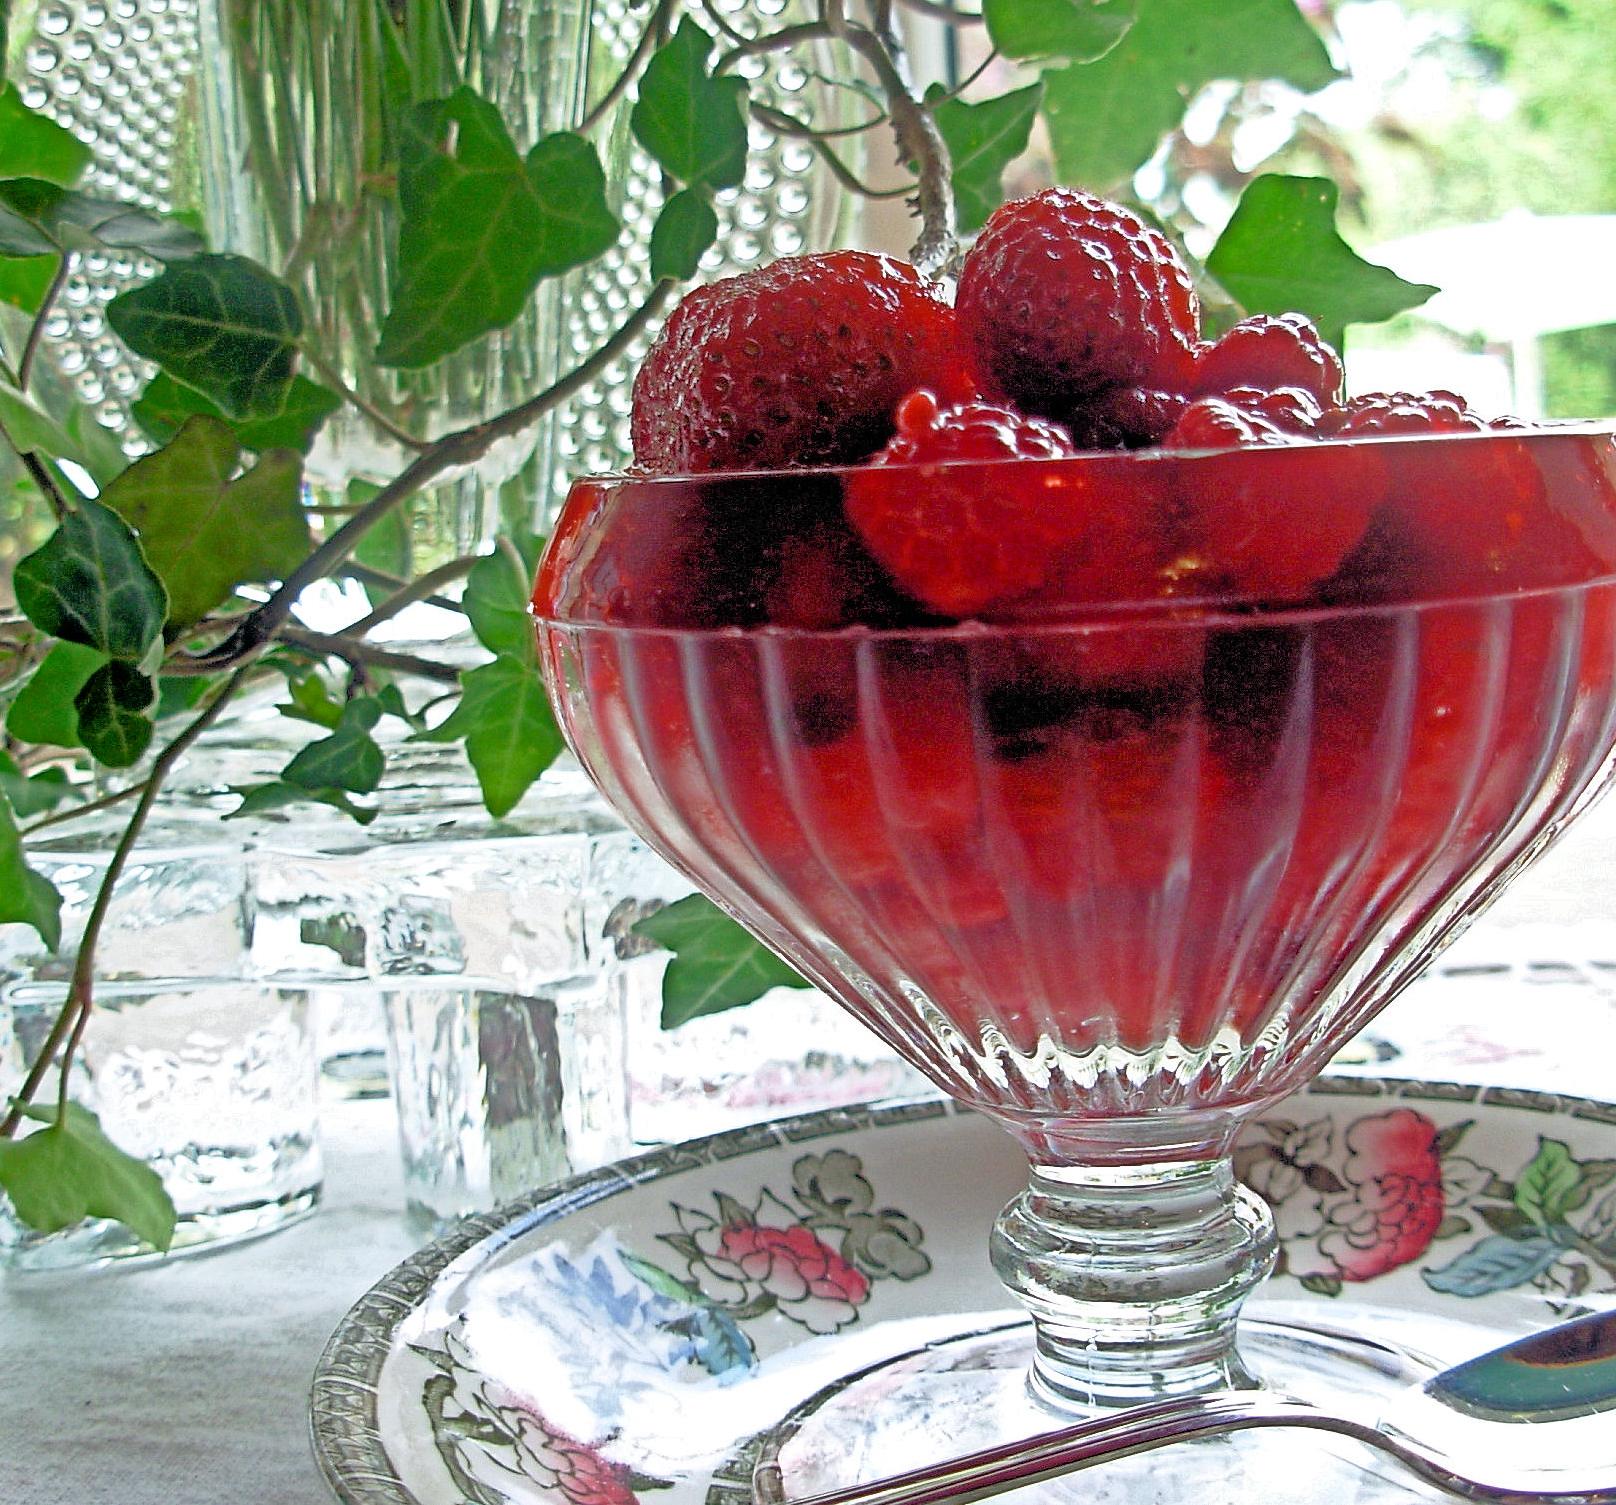 Rosy Rosé Berries: Strawberries and Raspberries in Wine